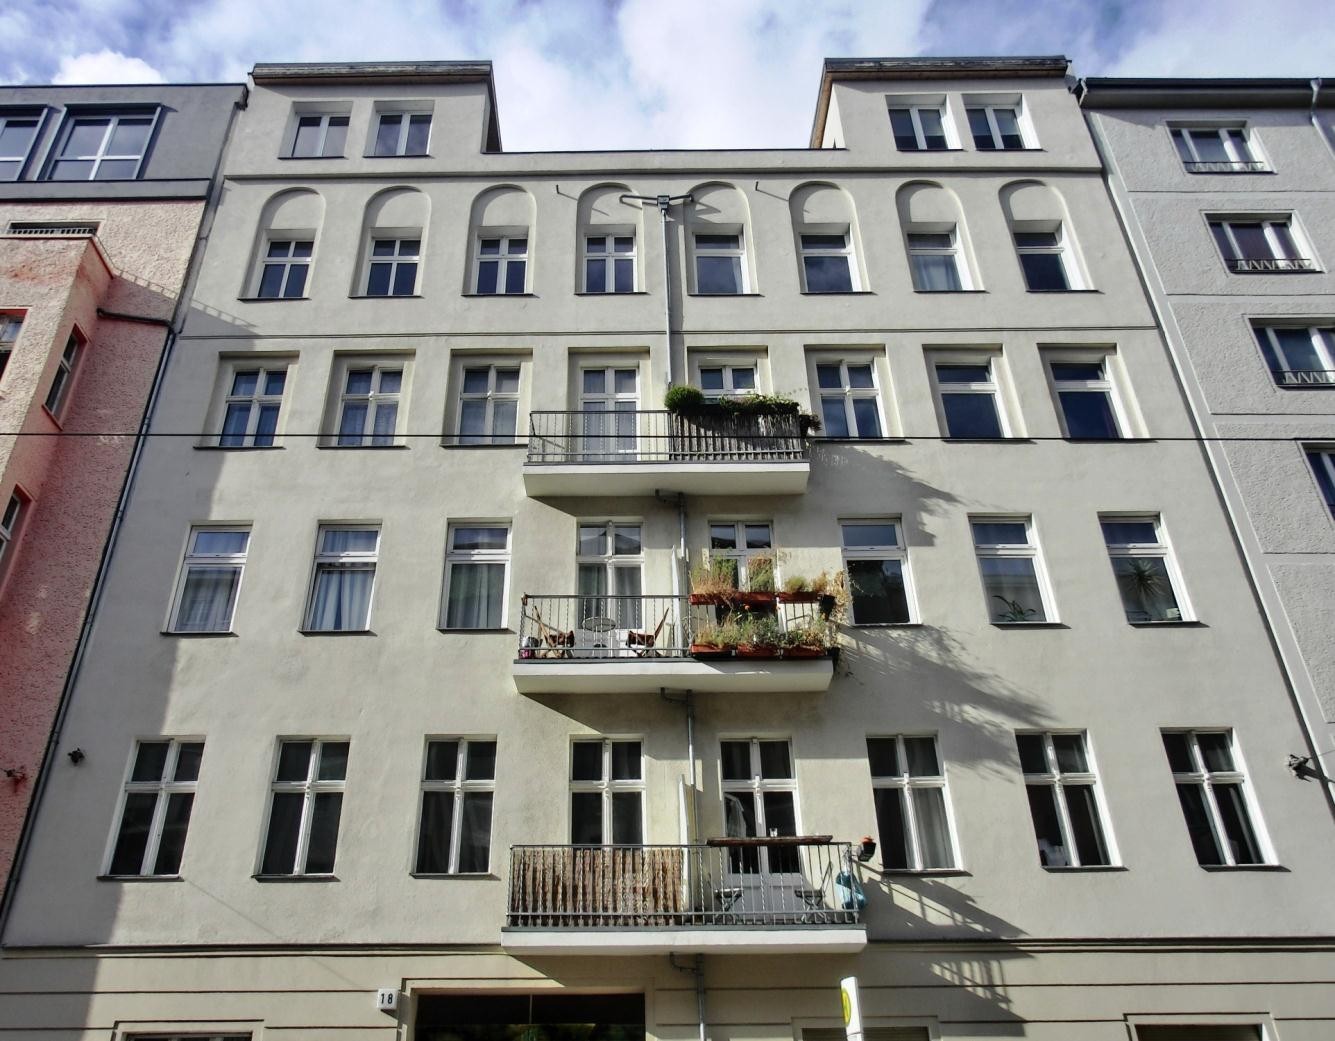 1- Palazzo rinnovato in Berlino Mitte: Palazzo dell 800 di 5 piani con 20 appartamenti, completamente restaurato nel 2006.